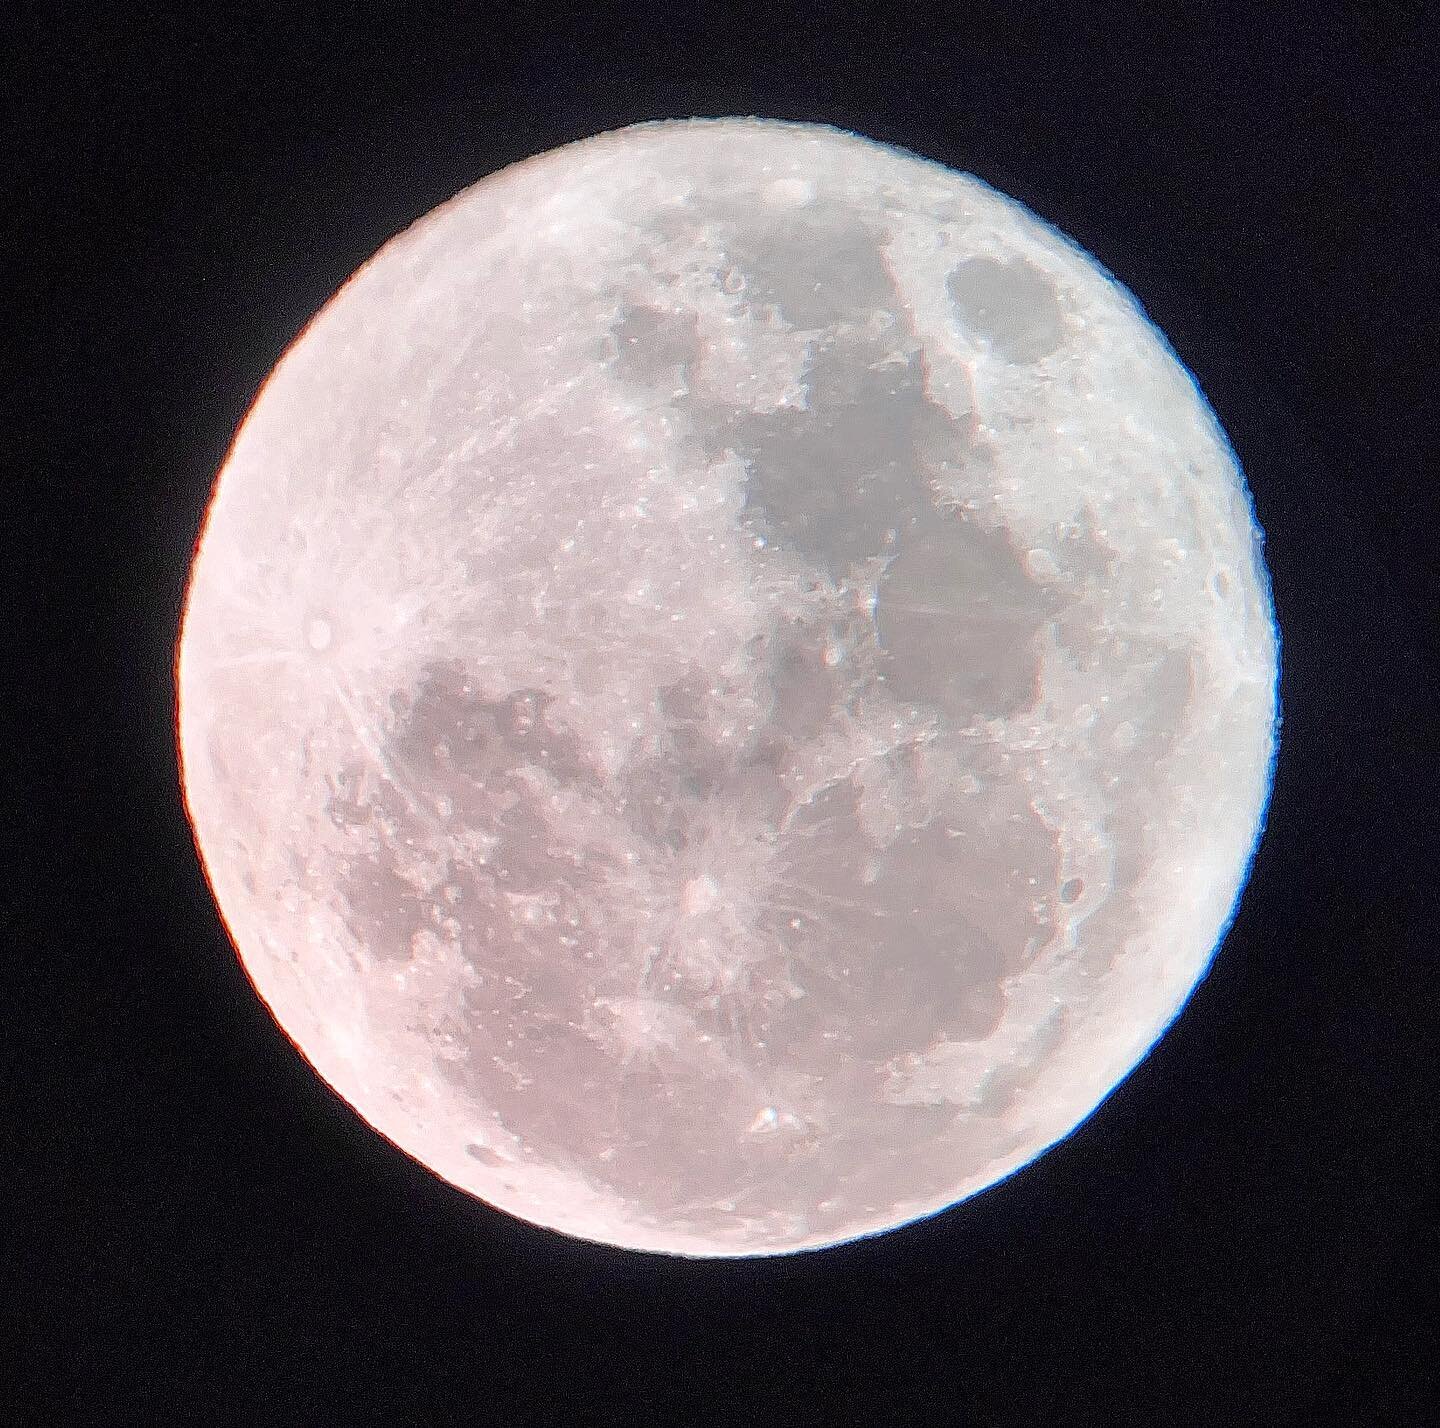 MAMY TO!!! Taki mi wisi właśnie nad Warmią! I sama zrobiłam to zdjęcie! Znaczy ajfonem przez teleskop. Pełnia! 🌕🌕🌕🌕 #moon #fullmoon #foolmoon #truskawkowapełnia